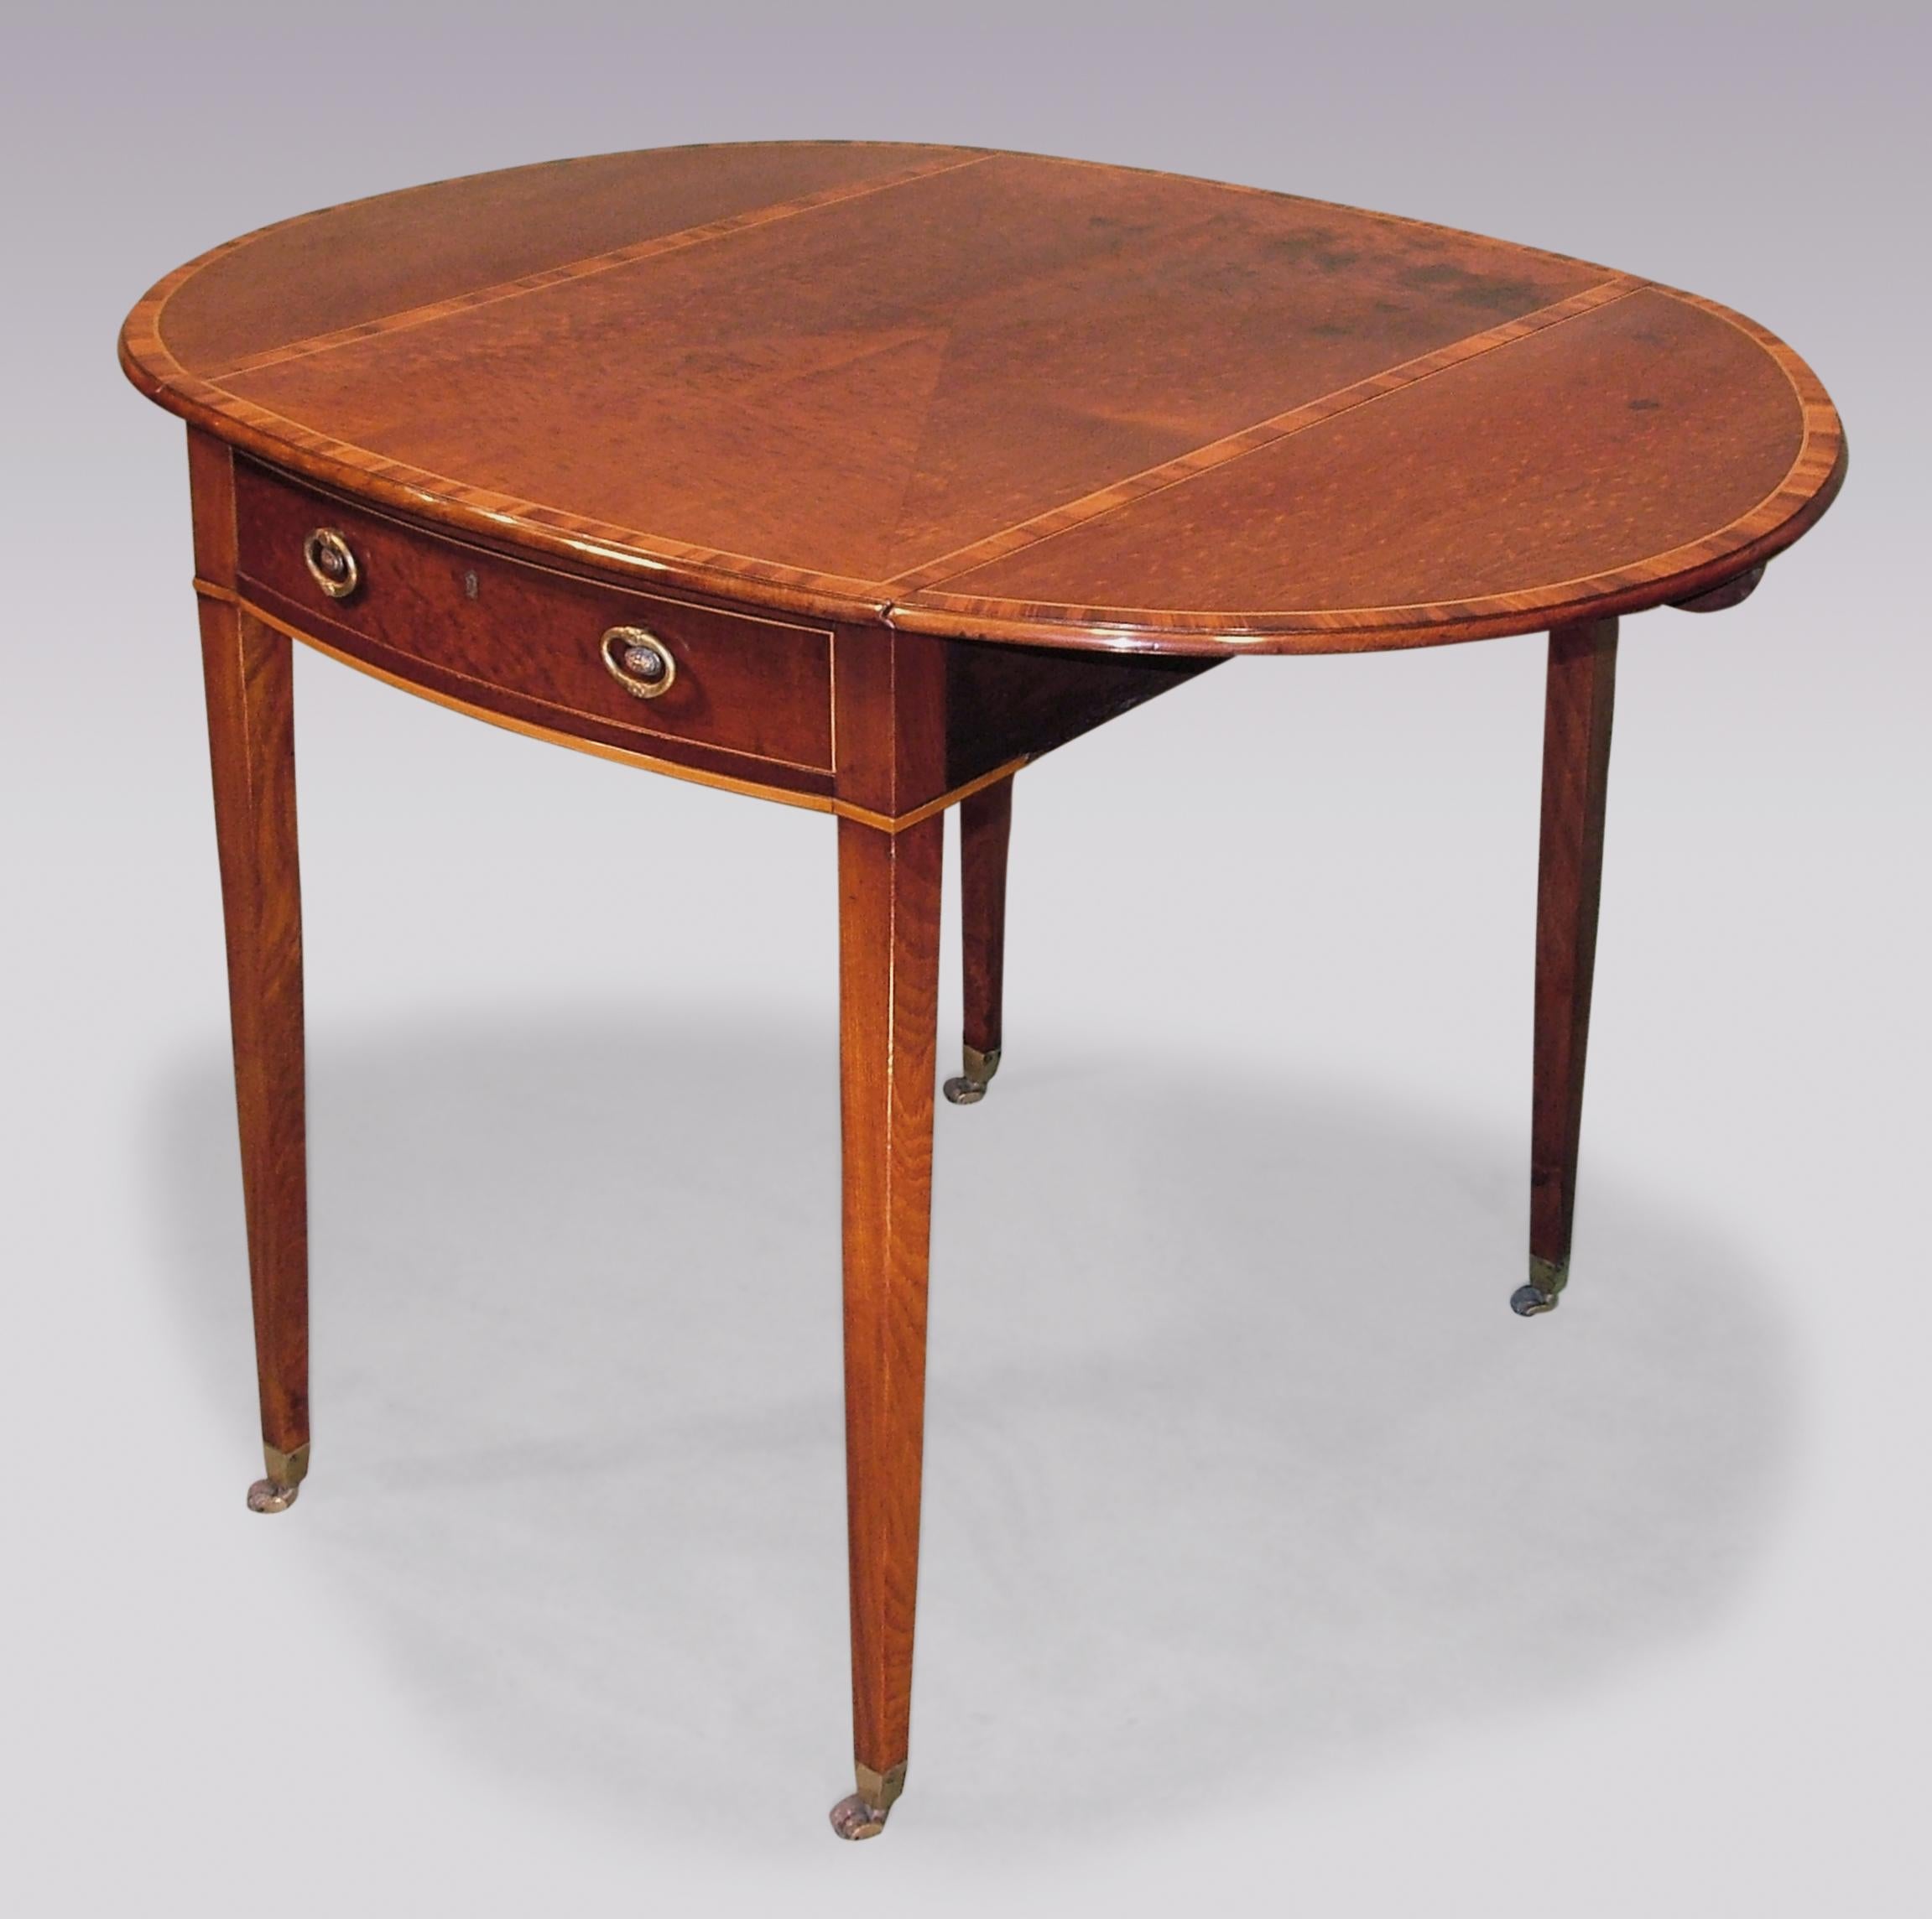 Table Pembroke de la fin du XVIIIe siècle, de style Sheraton, en acajou, avec un plateau ovale en bois de padouk, buis et bois d'ébène, avec un centre en onglet au-dessus d'un tiroir en frise avec poignées d'origine, supporté par des pieds carrés